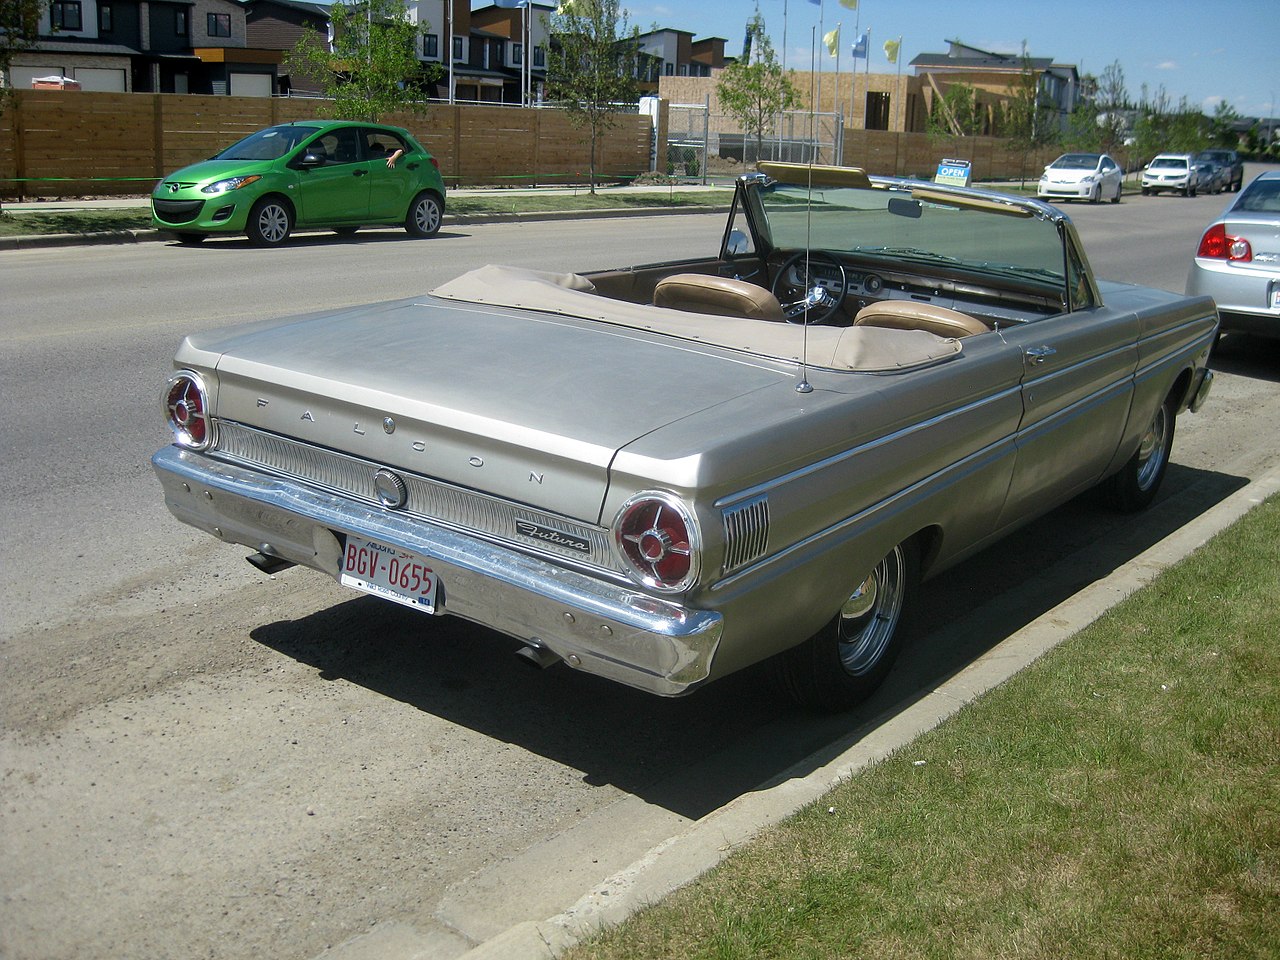 Image of 1964 Ford Falcon Futura convertible rear (14444260771)